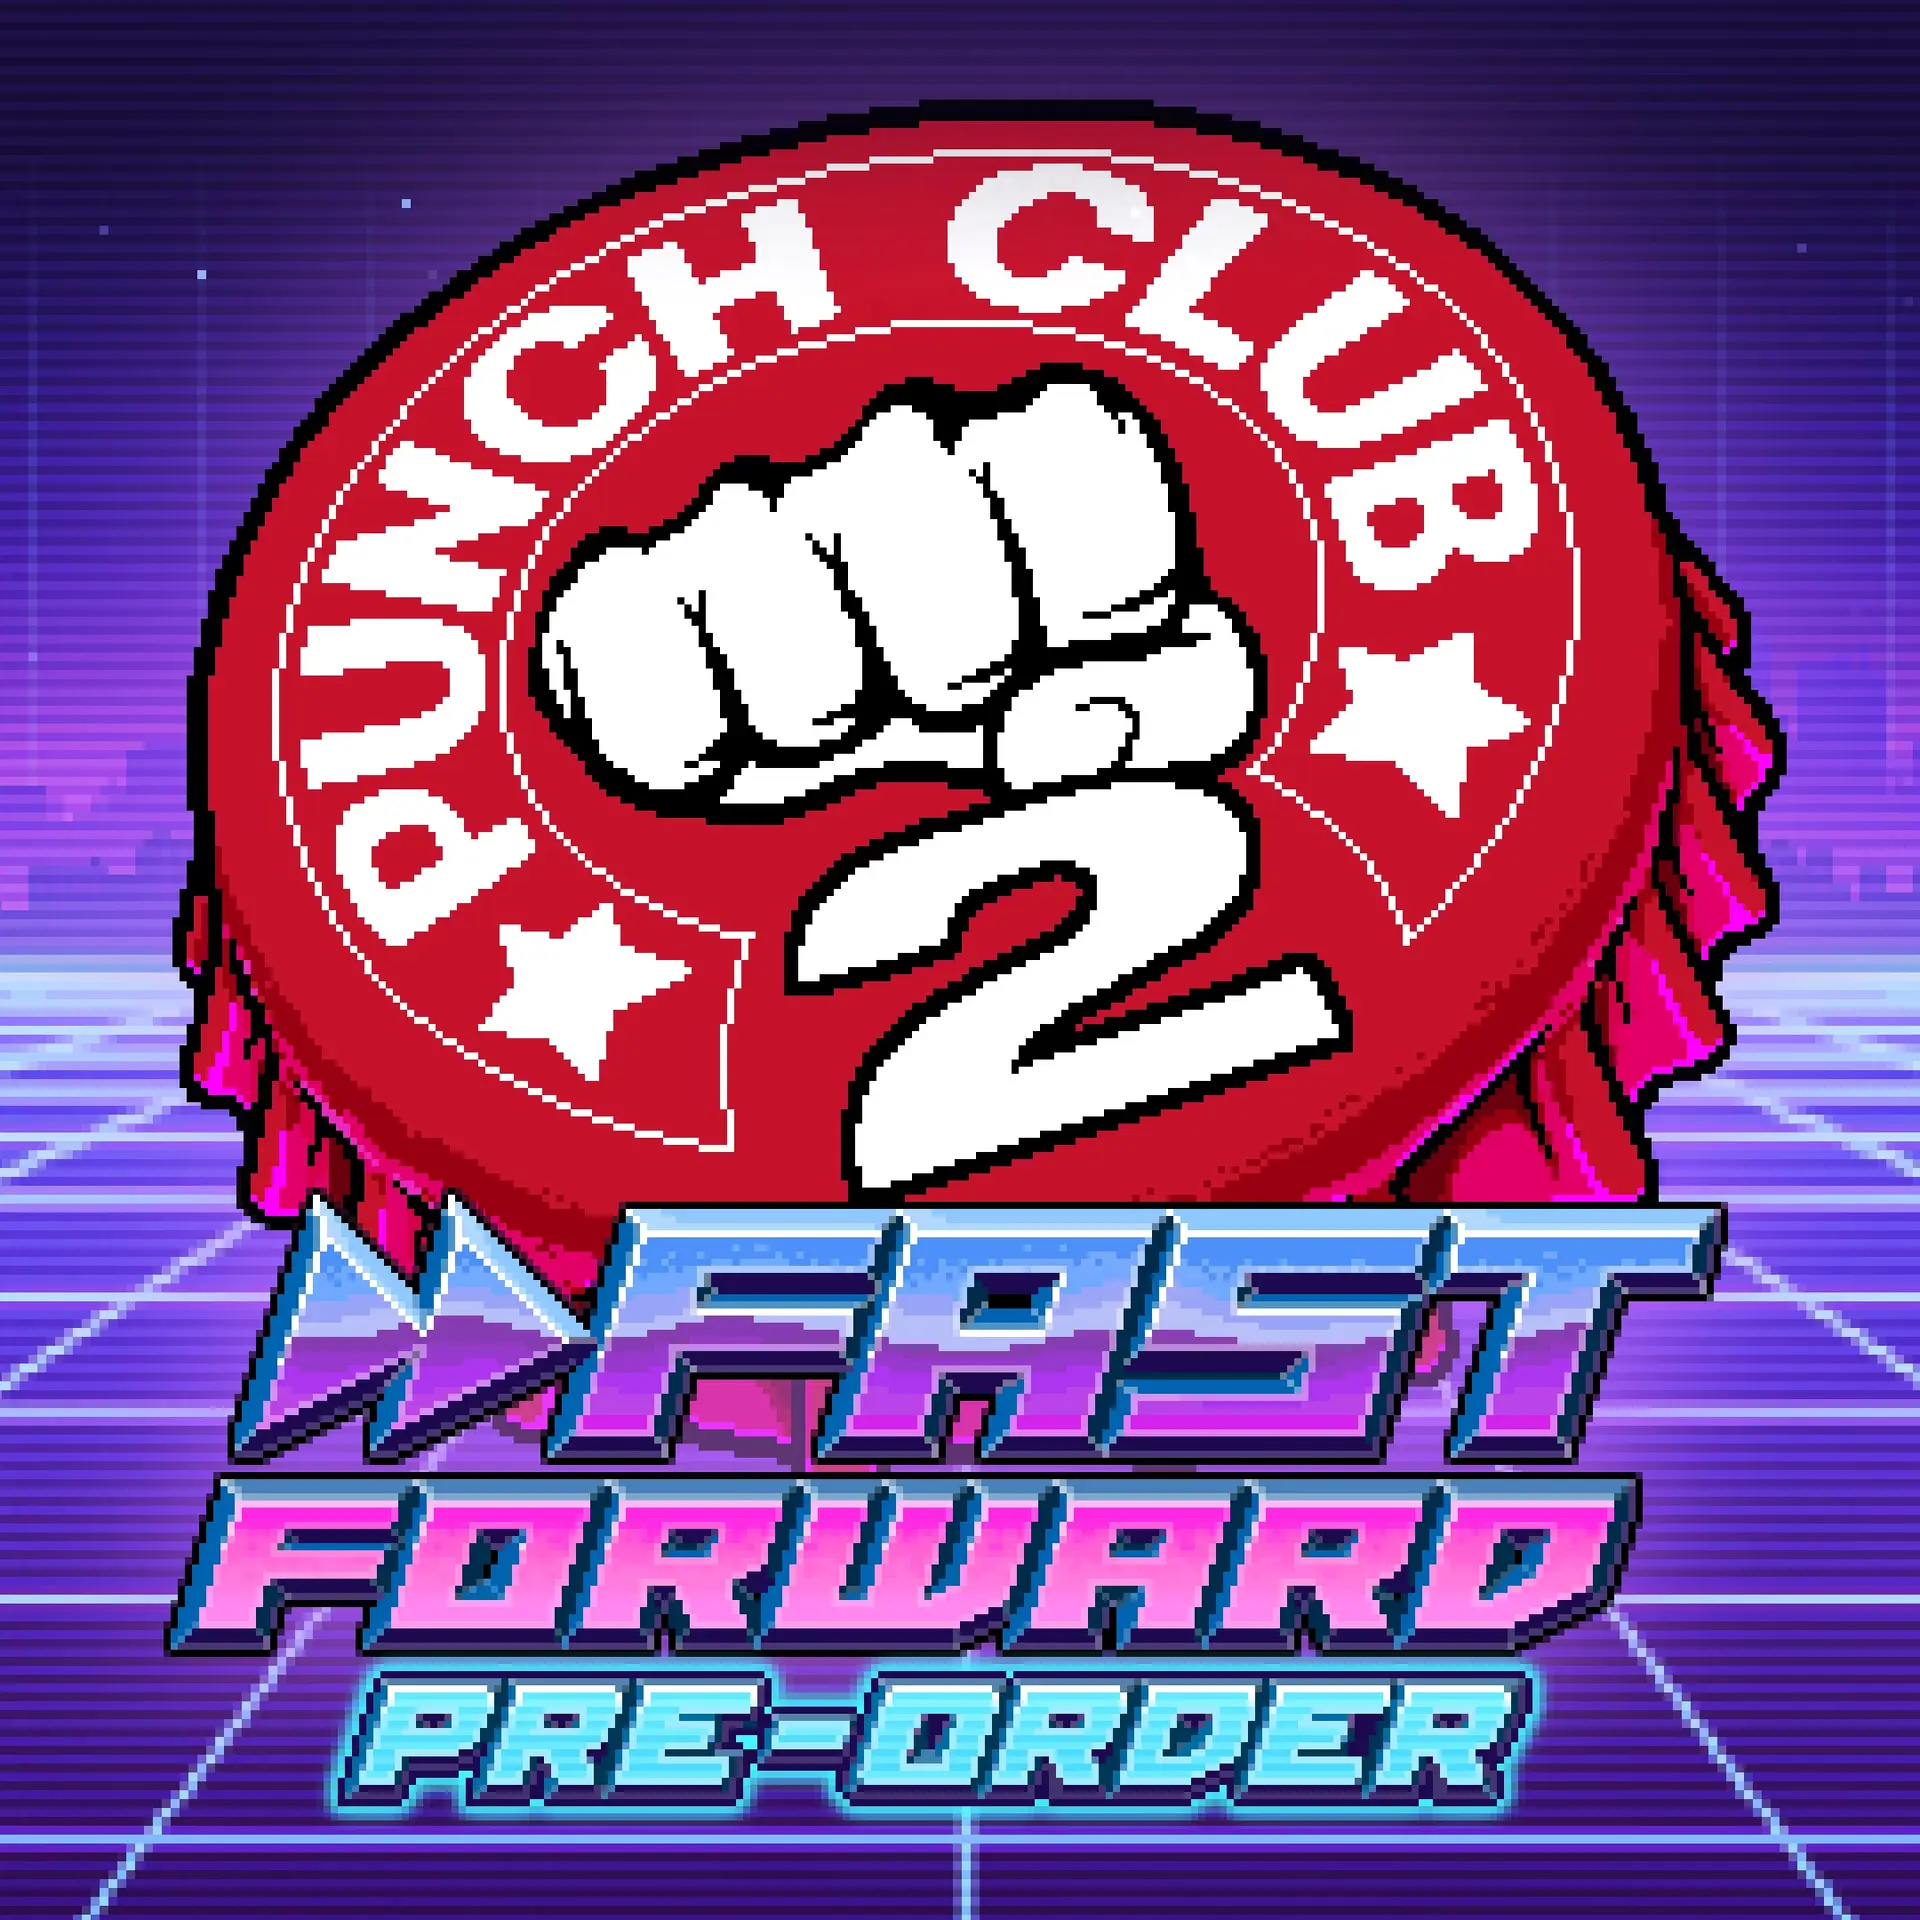 Punch club 2 fast forward steam фото 21